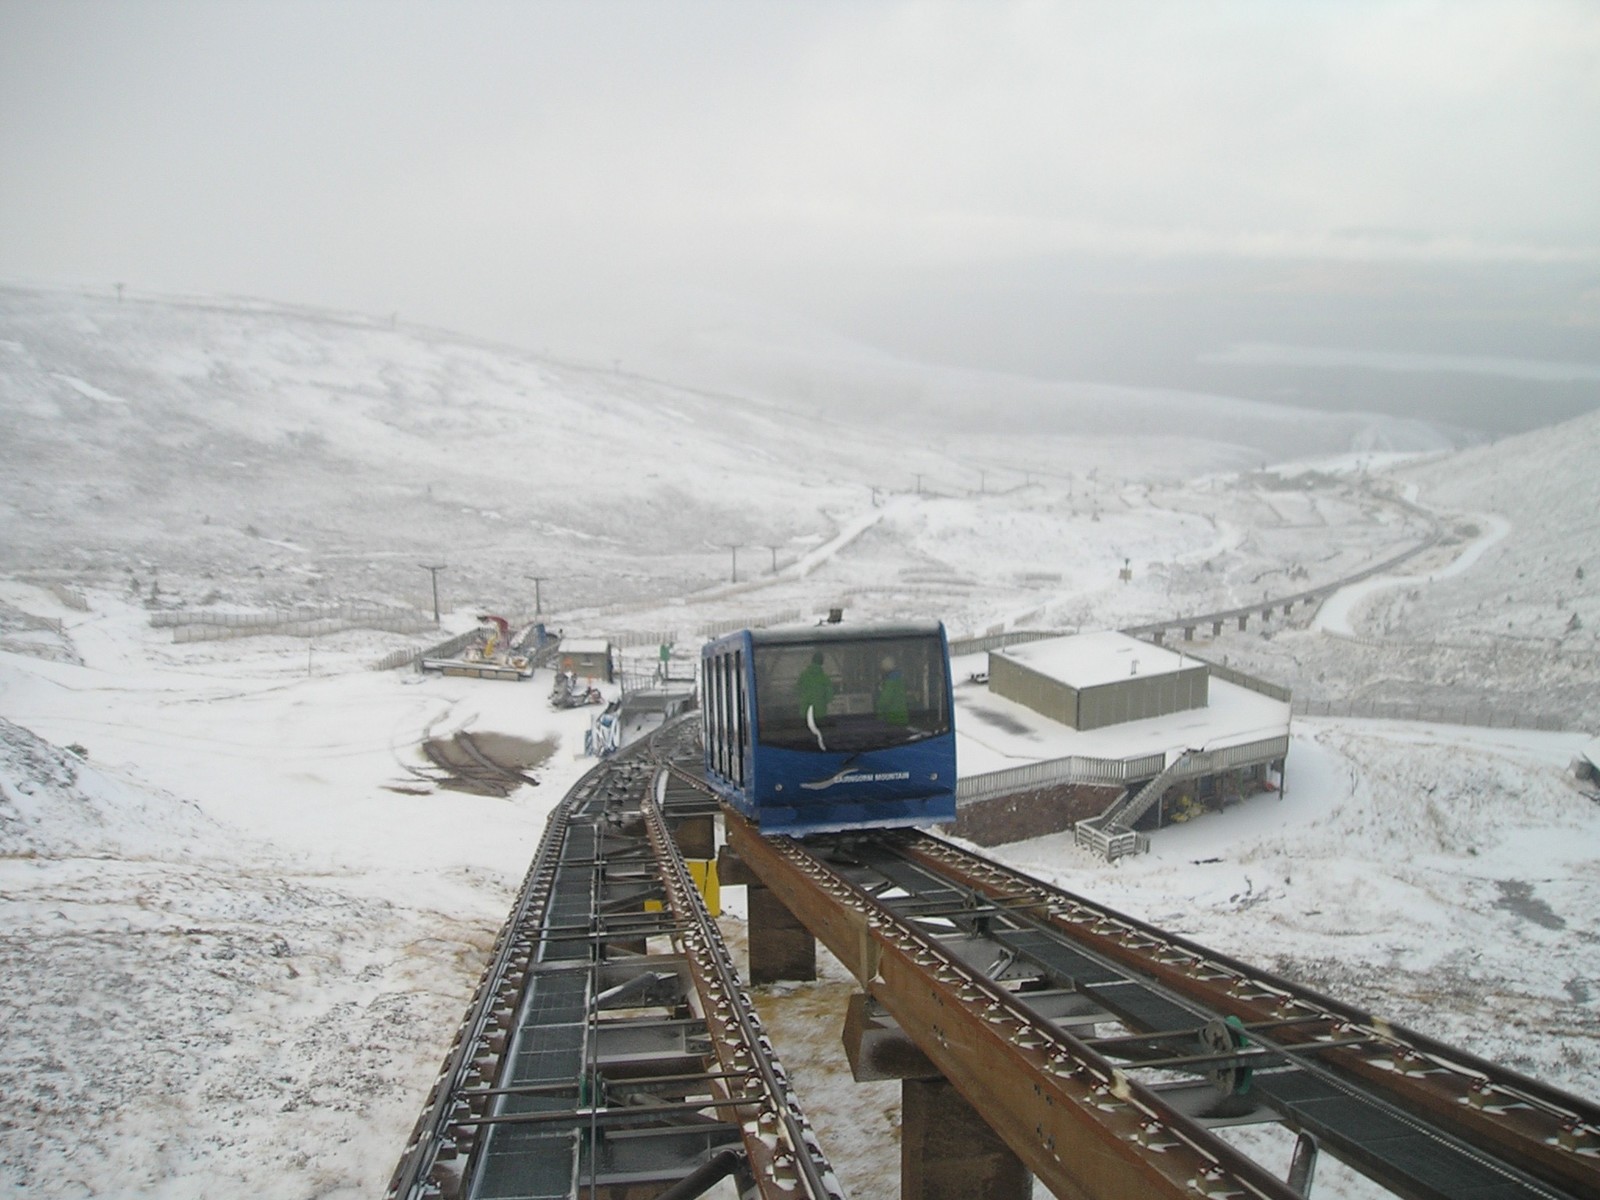 Funicular railway at Cairngorm mountain